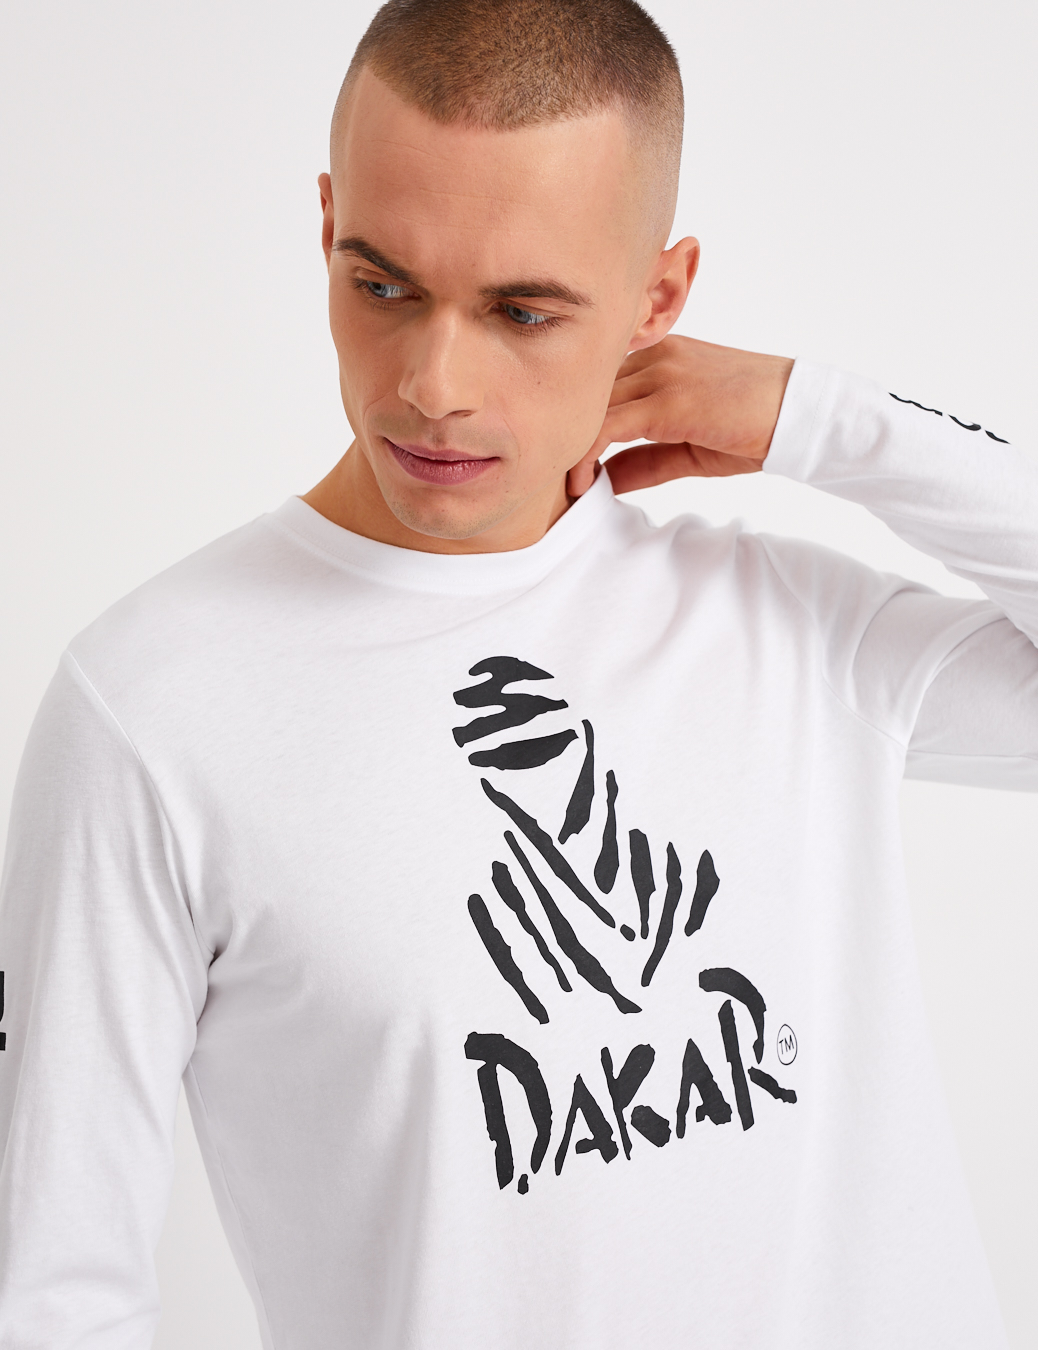 Longsleeve Shirt - Dakar Logo, white